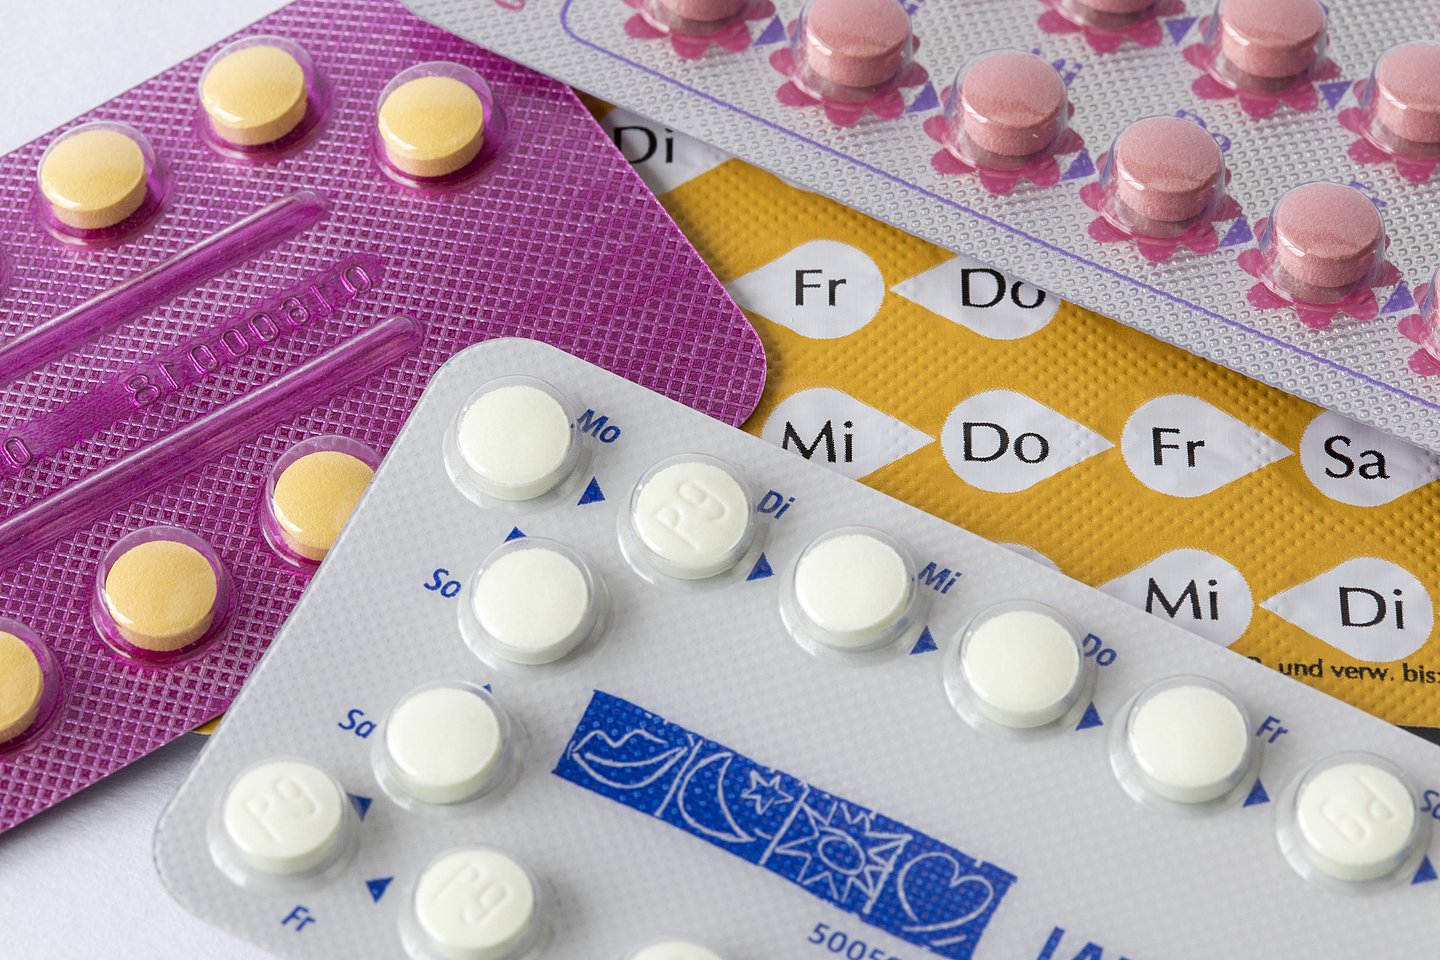 Foto: Verschiedene Verpackungen der Anti-Baby-Pille.